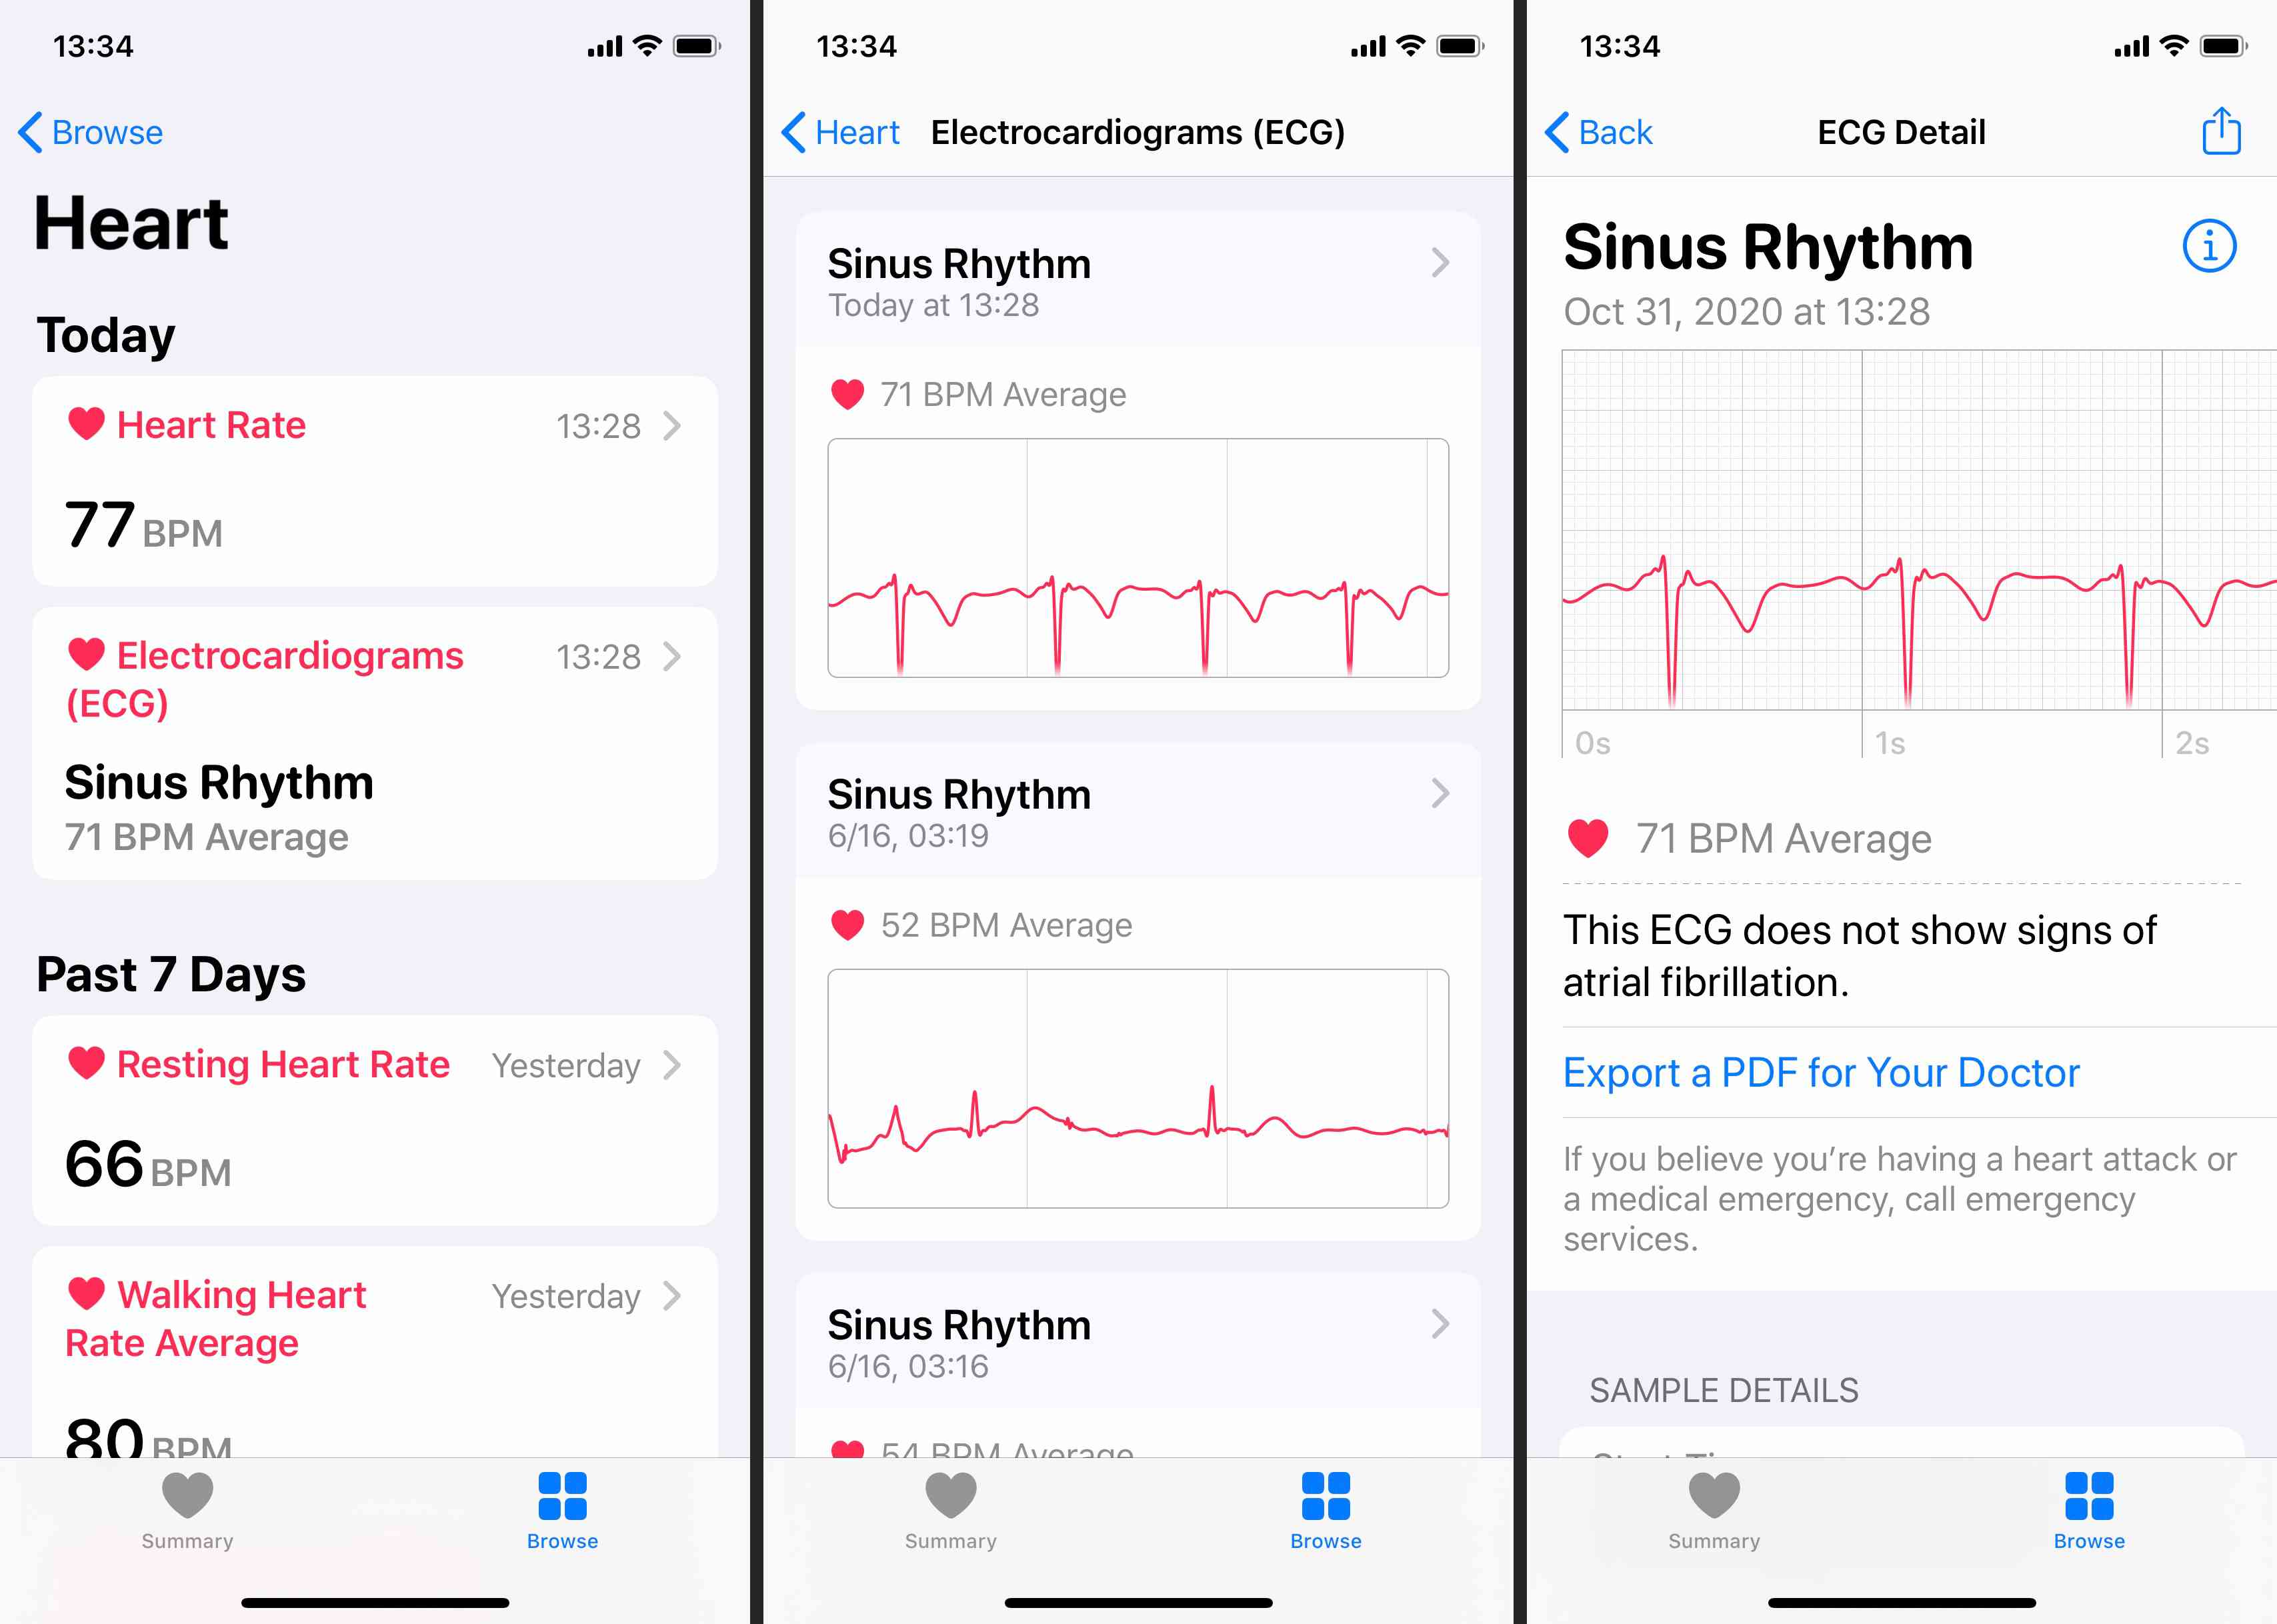 Você também pode ver os resultados do ECG no aplicativo Saúde do iPhone emparelhado.